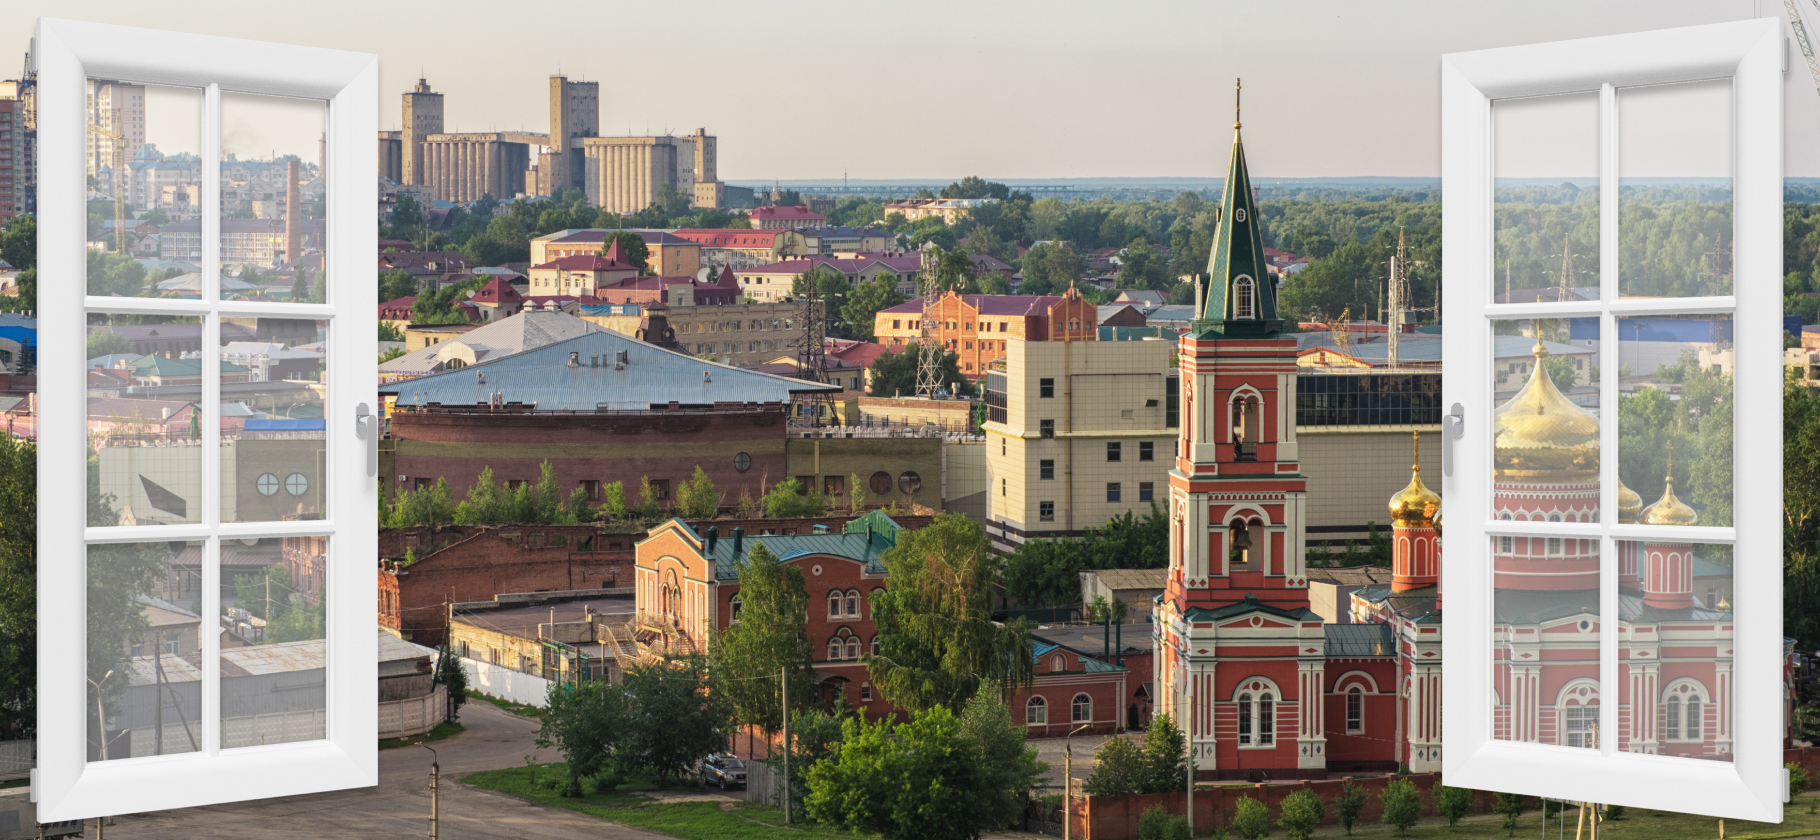 «Город торговых центров и пробок»: как я живу в Барнауле